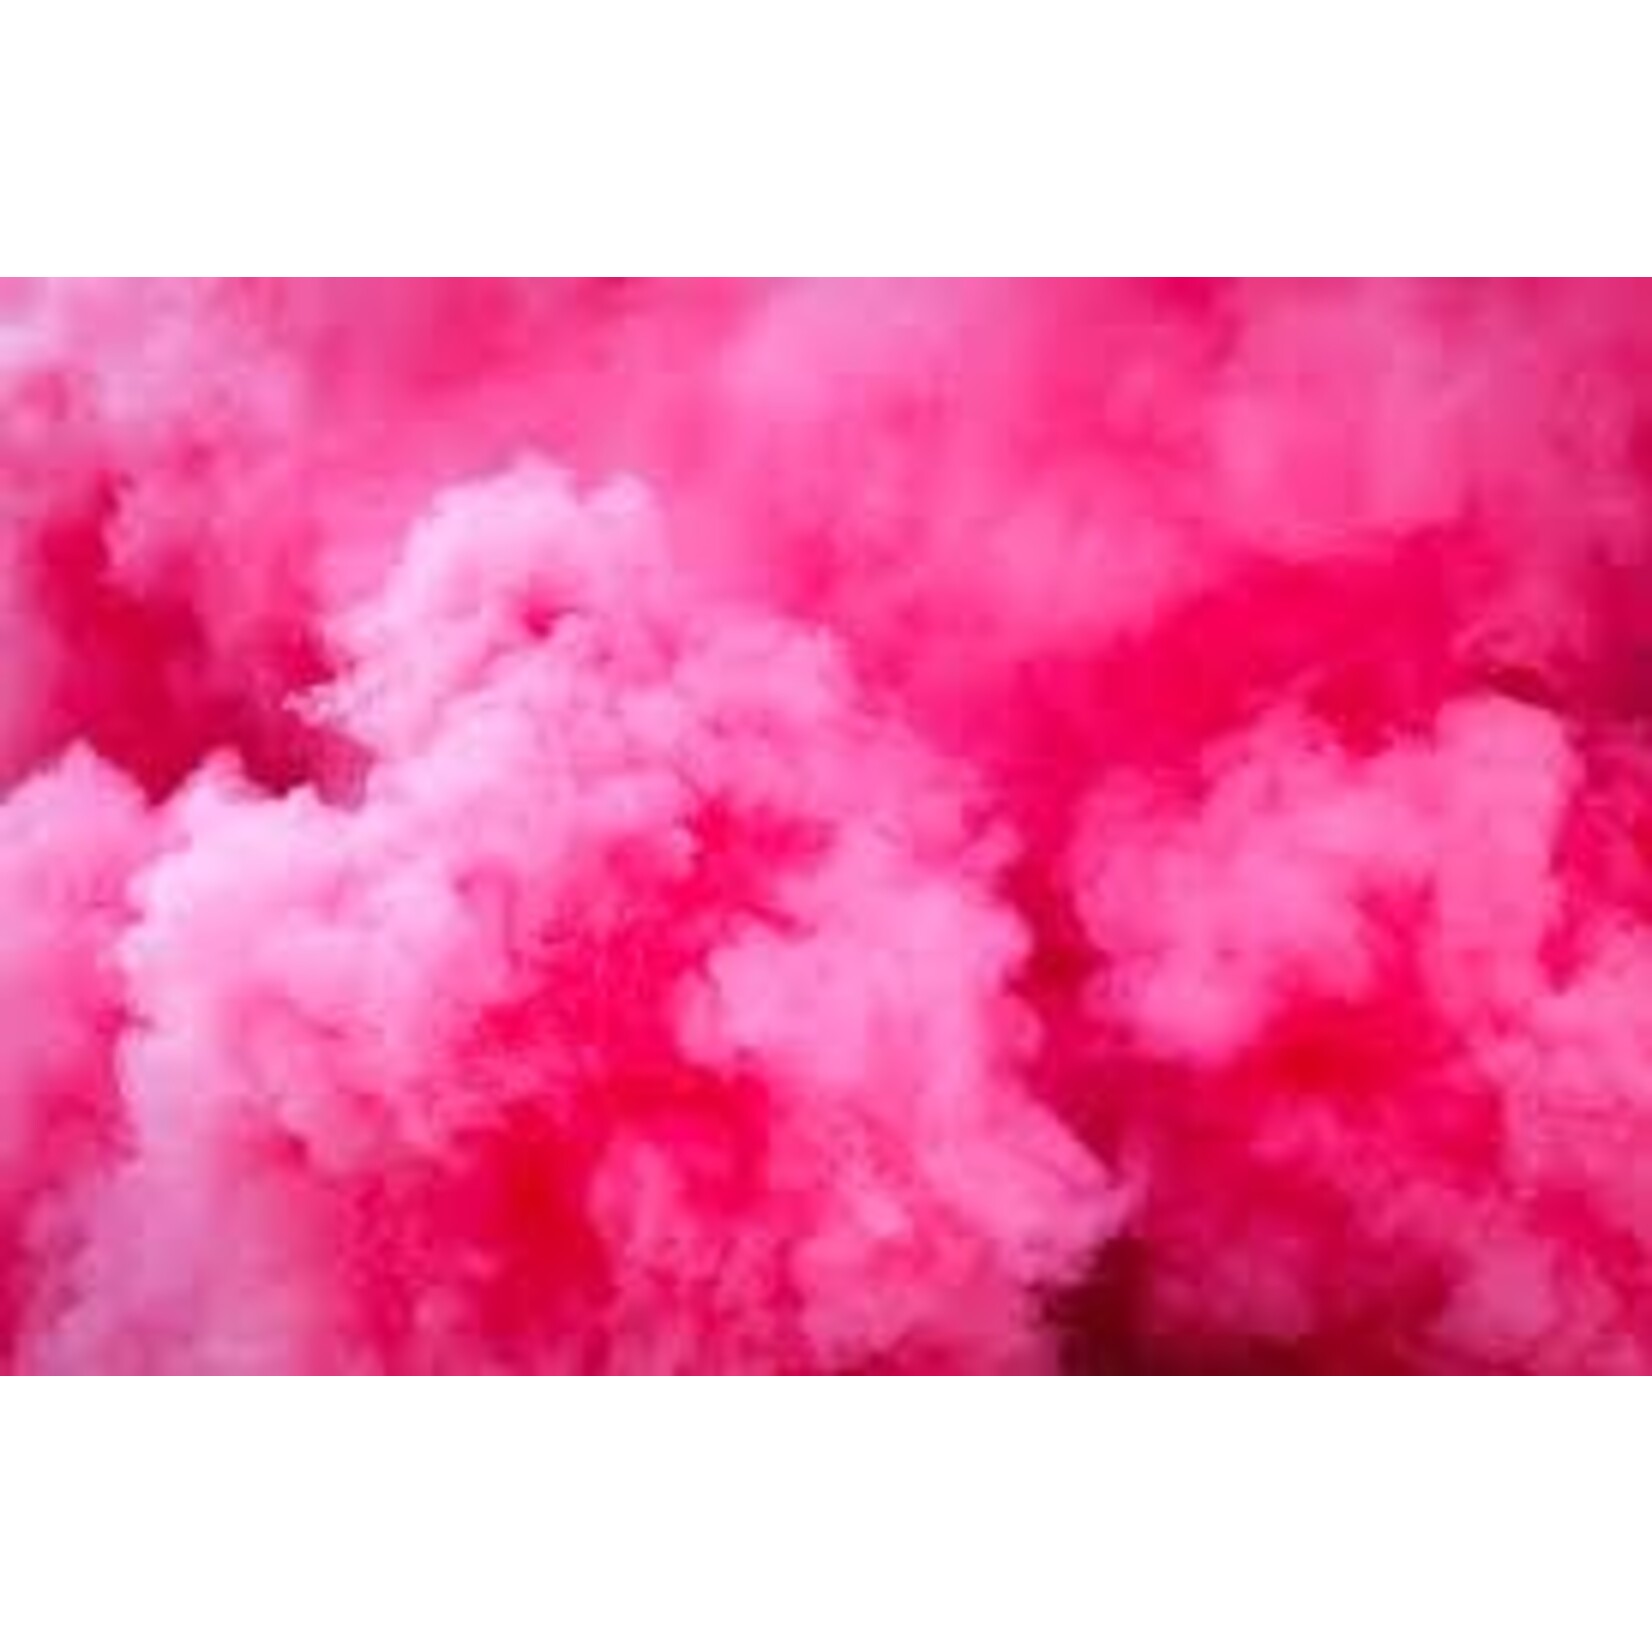 Pink Smoke Bomb - Baby Gender Reveal Smoke Bombs